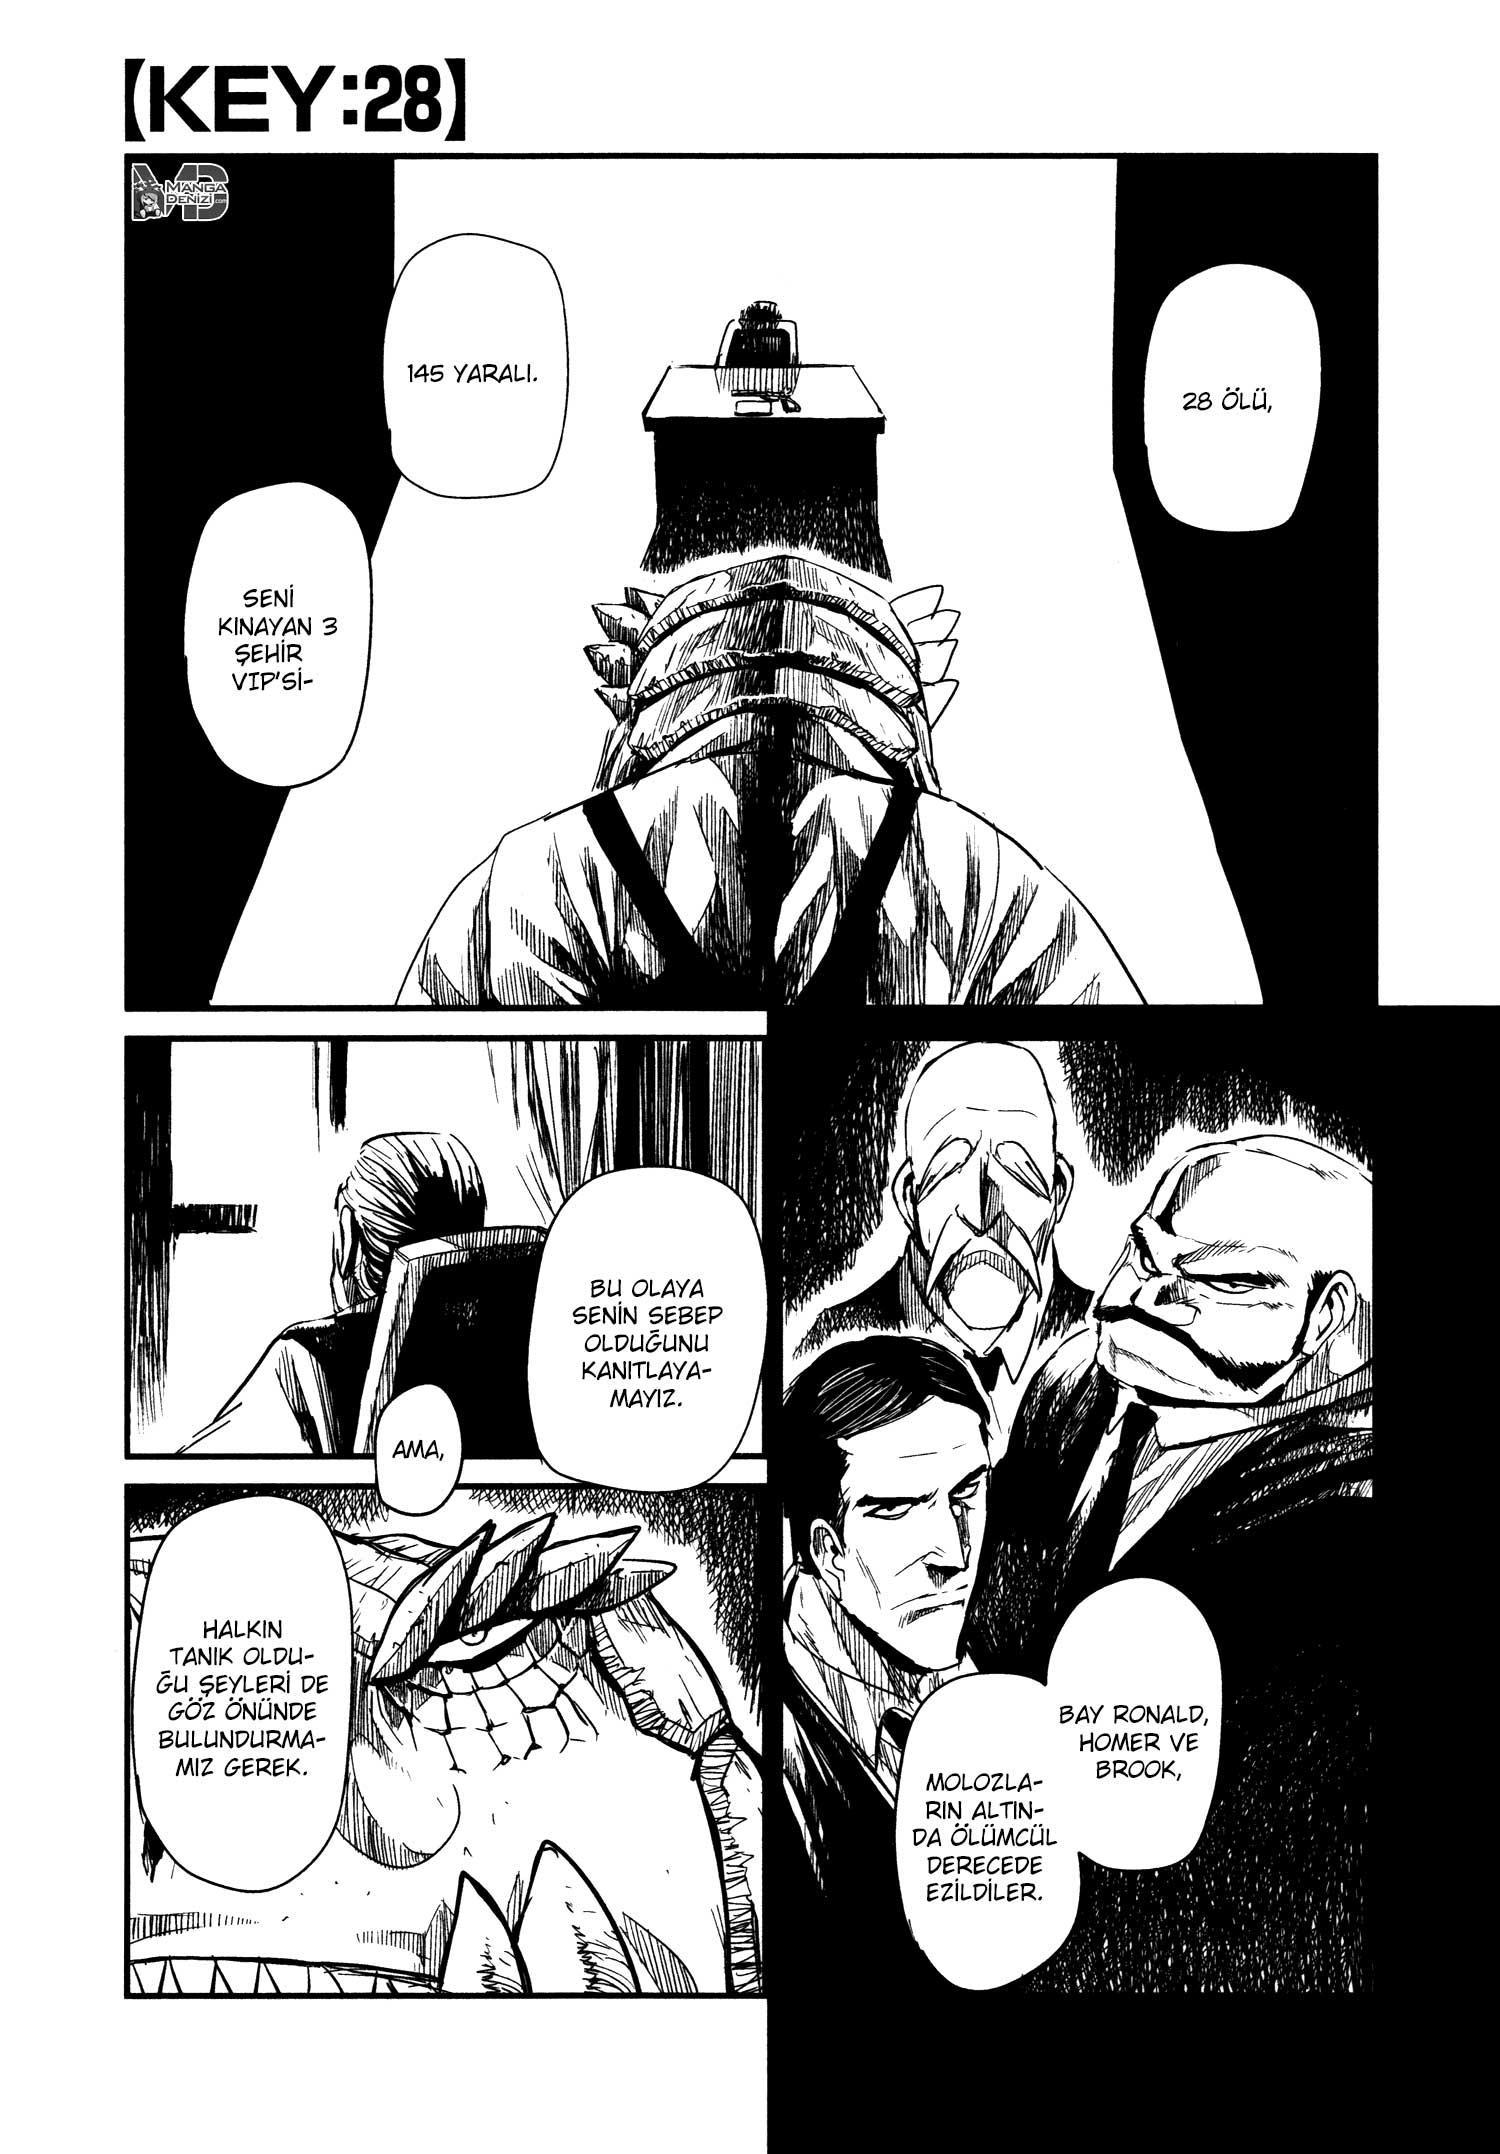 Keyman: The Hand of Judgement mangasının 28 bölümünün 2. sayfasını okuyorsunuz.